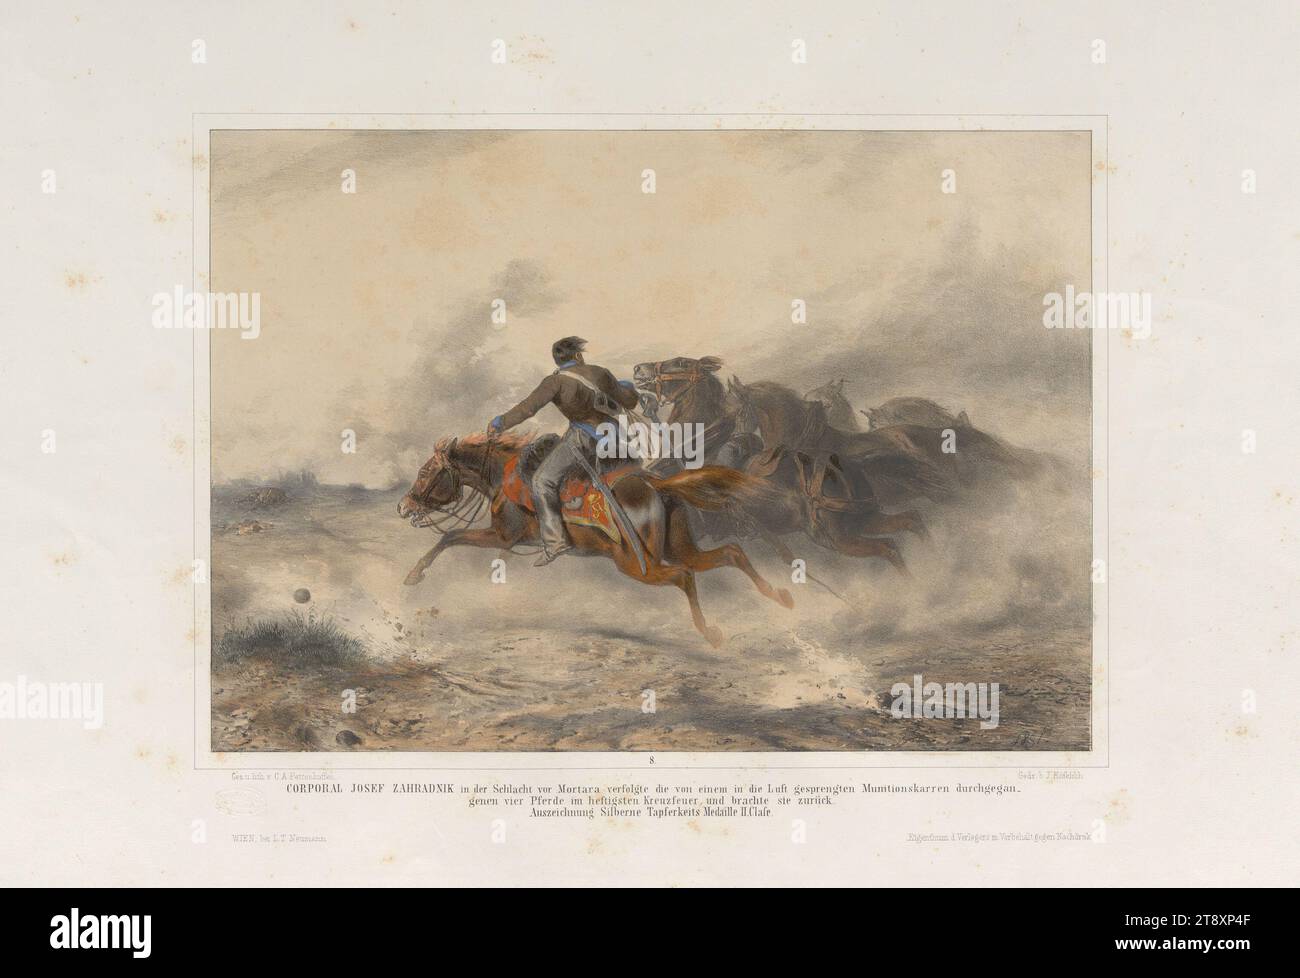 LE CAPORAL JOSEF ZAHRADNIK dans la bataille avant que Mortara poursuive les quatre chevaux passés par un chariot de munitions soufflé dans les airs, dans les tirs croisés les plus féroces, et les ramène, (...) » (No 8 de la série '12 scènes du Hall d'honneur du corps impérial et royal de transport militaire'. Militär-Fuhrwesen-corpss'), August Xaver Karl Pettenkofen (Ritter von) (1822-1889), lithographe, Johann Höfelich (1796-1849), imprimeur, Leopold Theodor Neumann (1804-1876), éditeur, 1851, papier, coloré, lithographie à la craie, hauteur 40,5 cm, largeur 57,1 cm, beaux-arts, militaire, révolutions de 1848, 1849 Banque D'Images